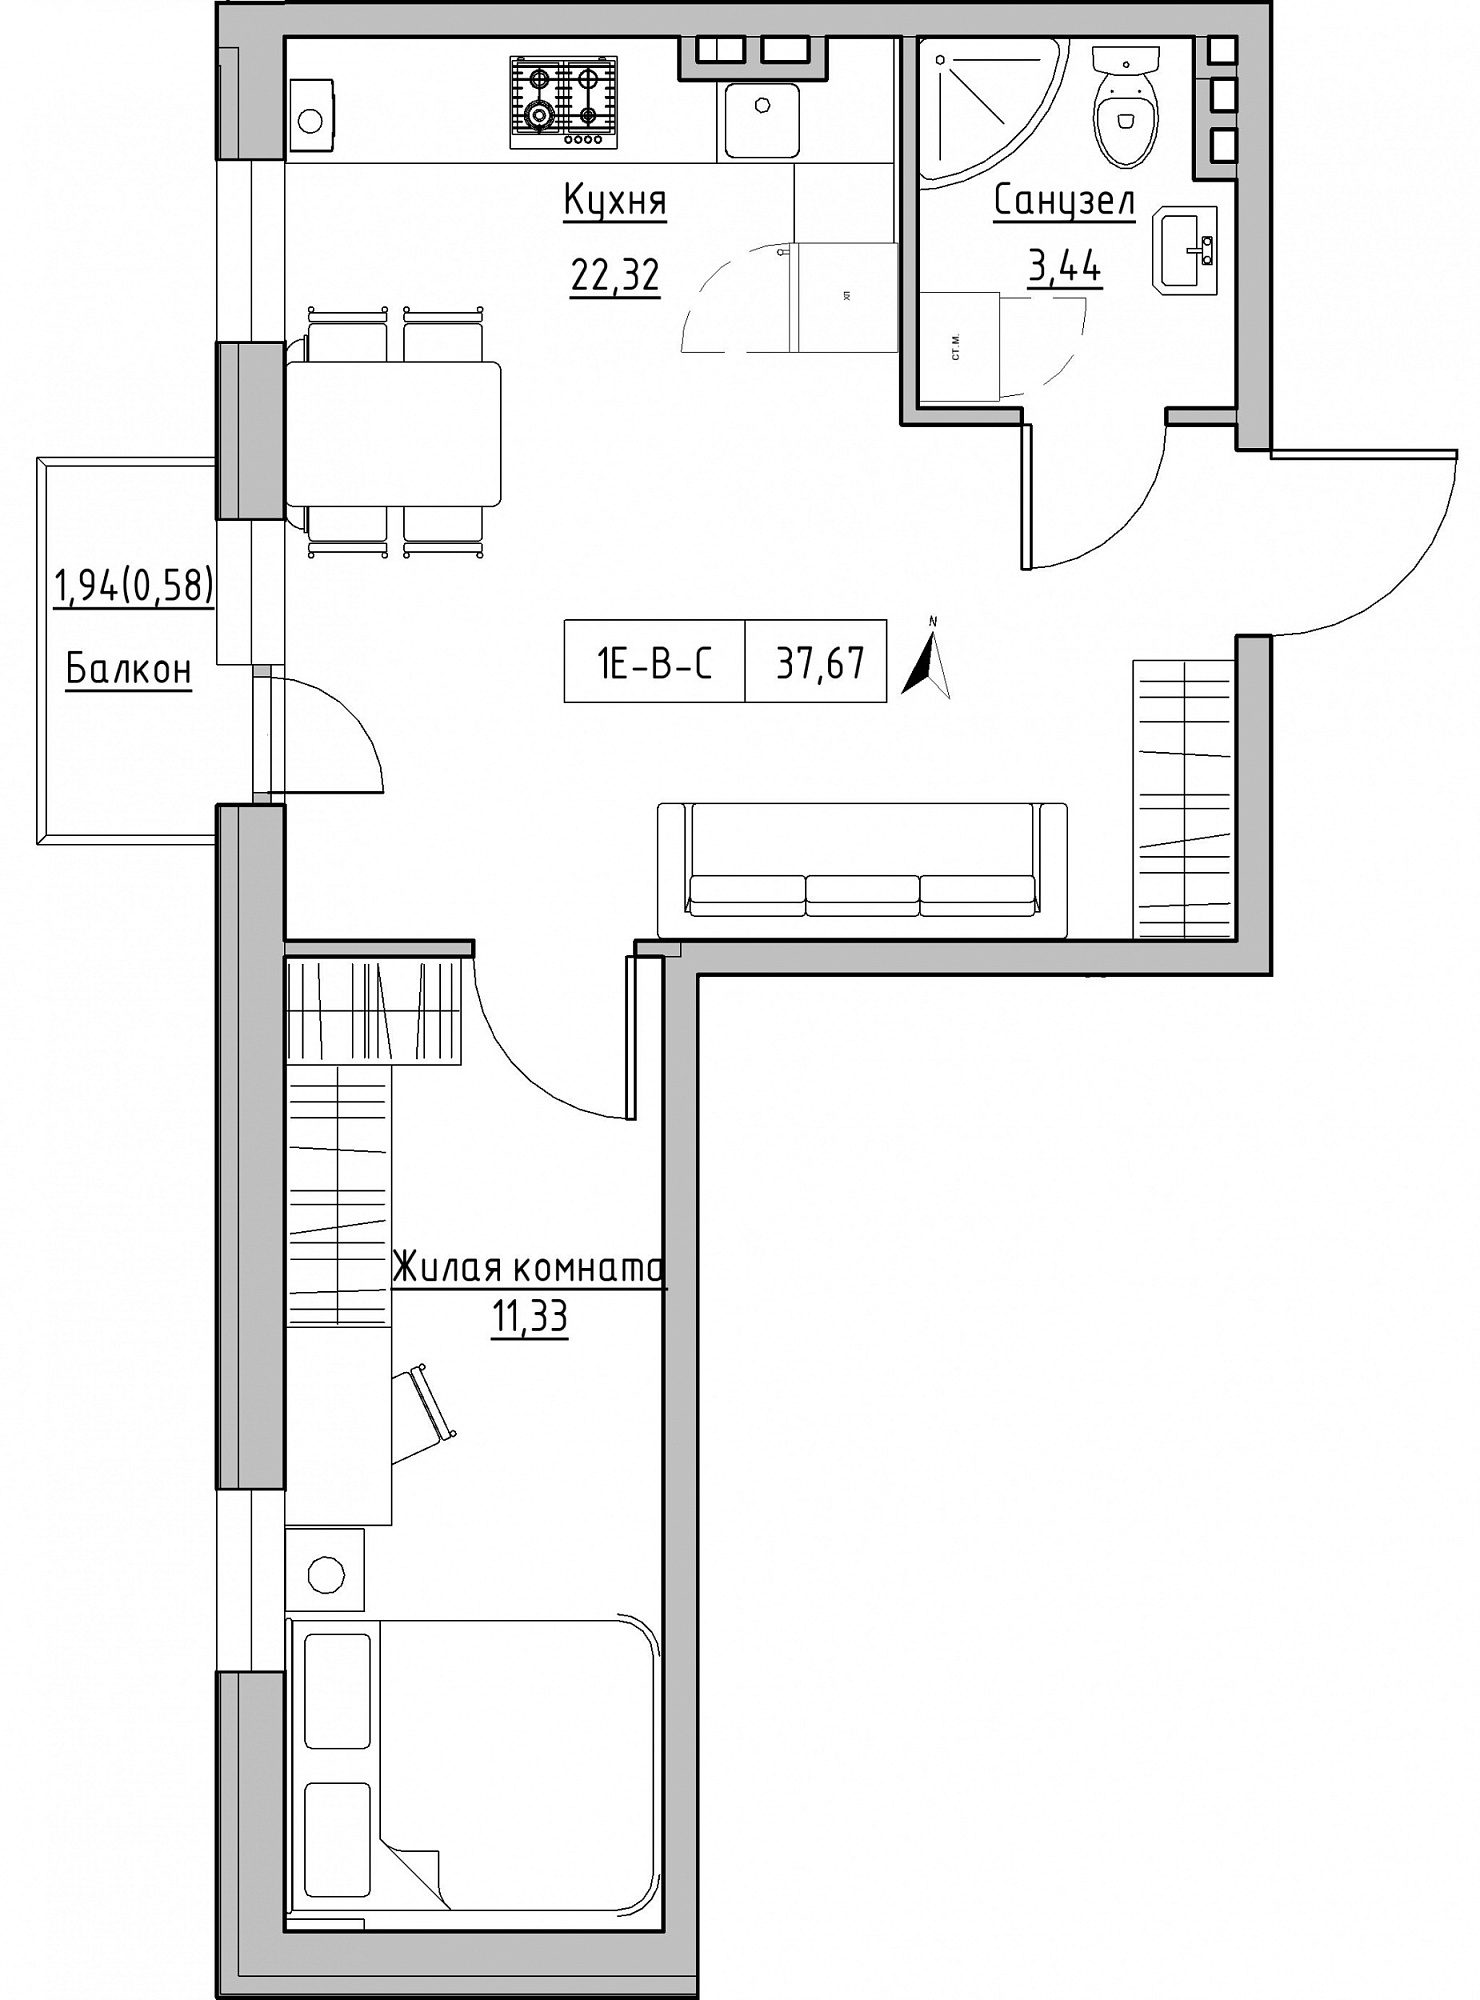 Планування 1-к квартира площею 37.67м2, KS-024-02/0009.